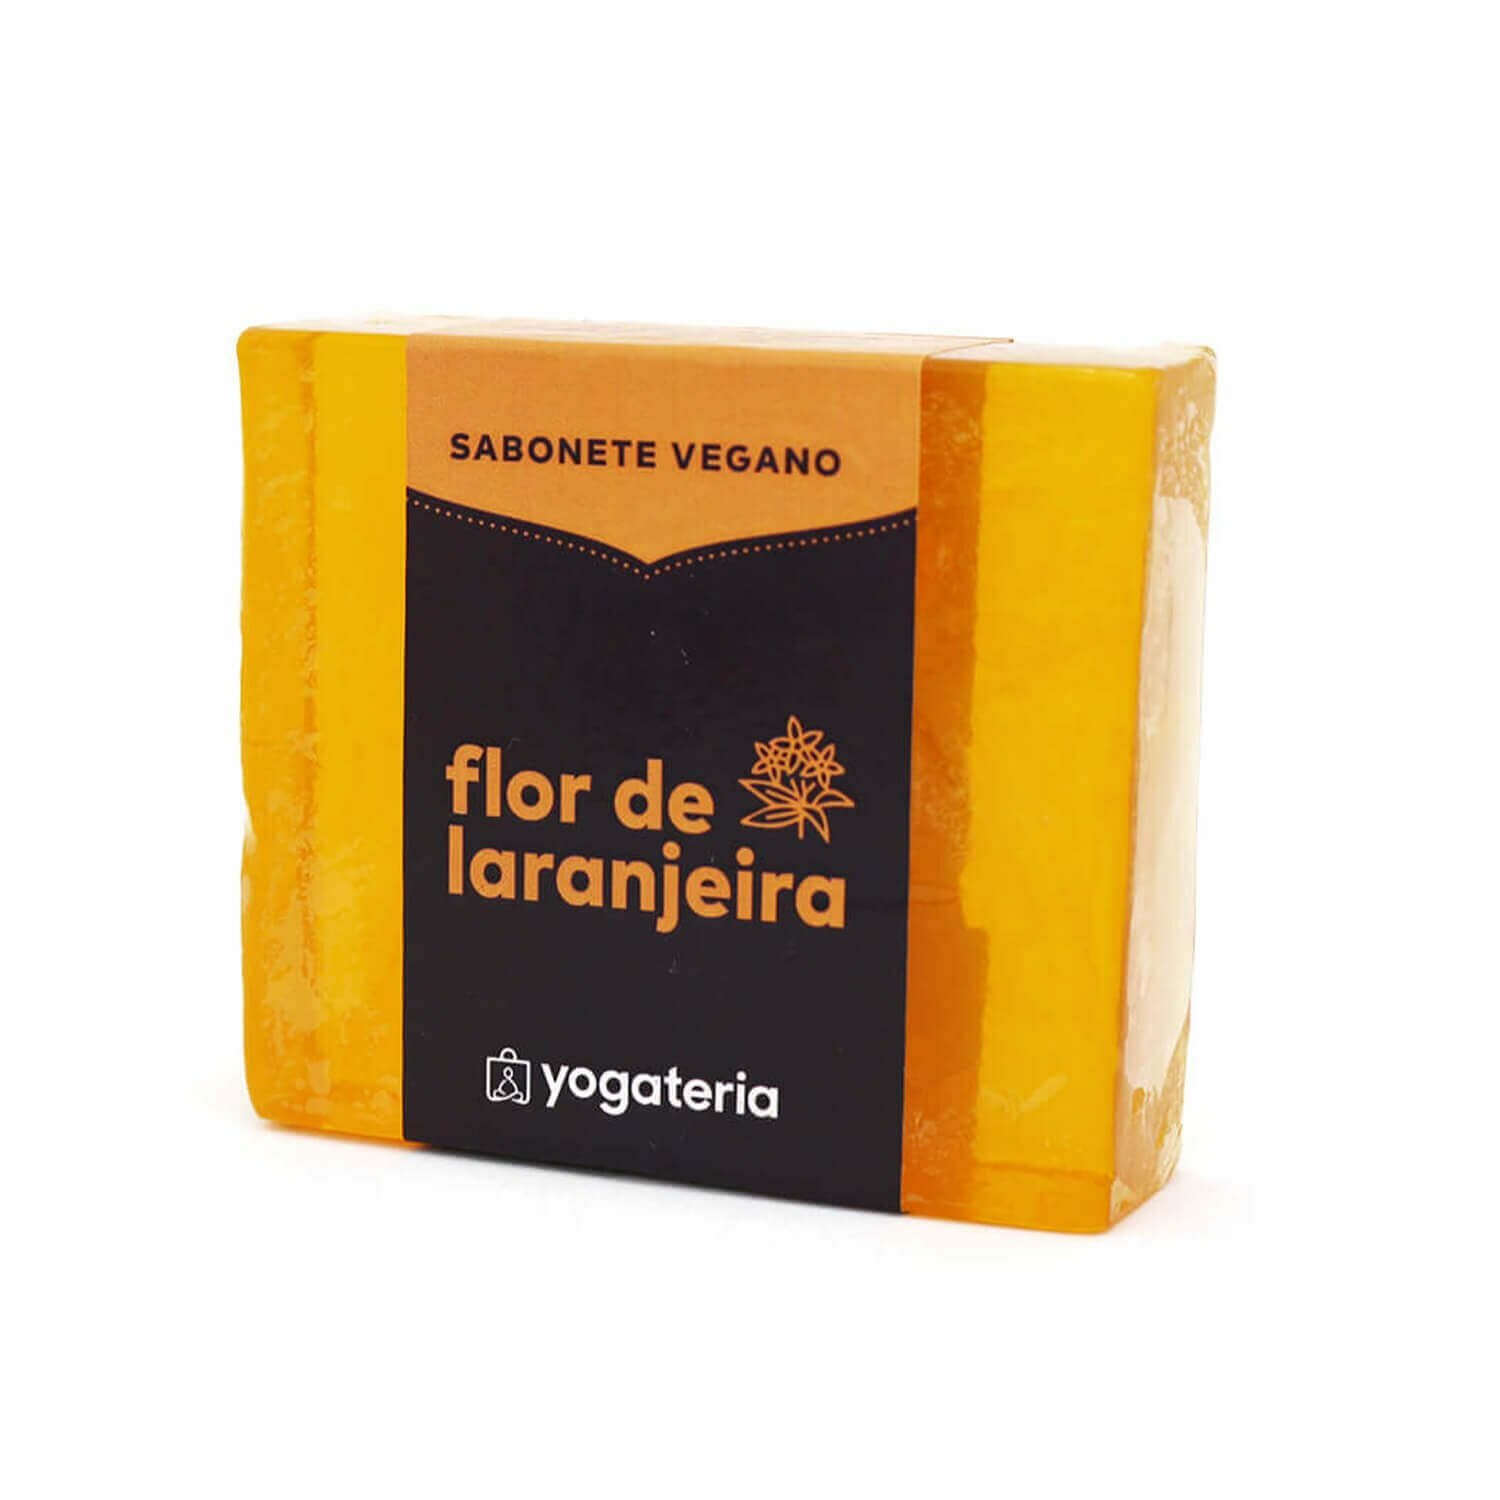 Sabonete Vegano Flor de Laranjeira 33